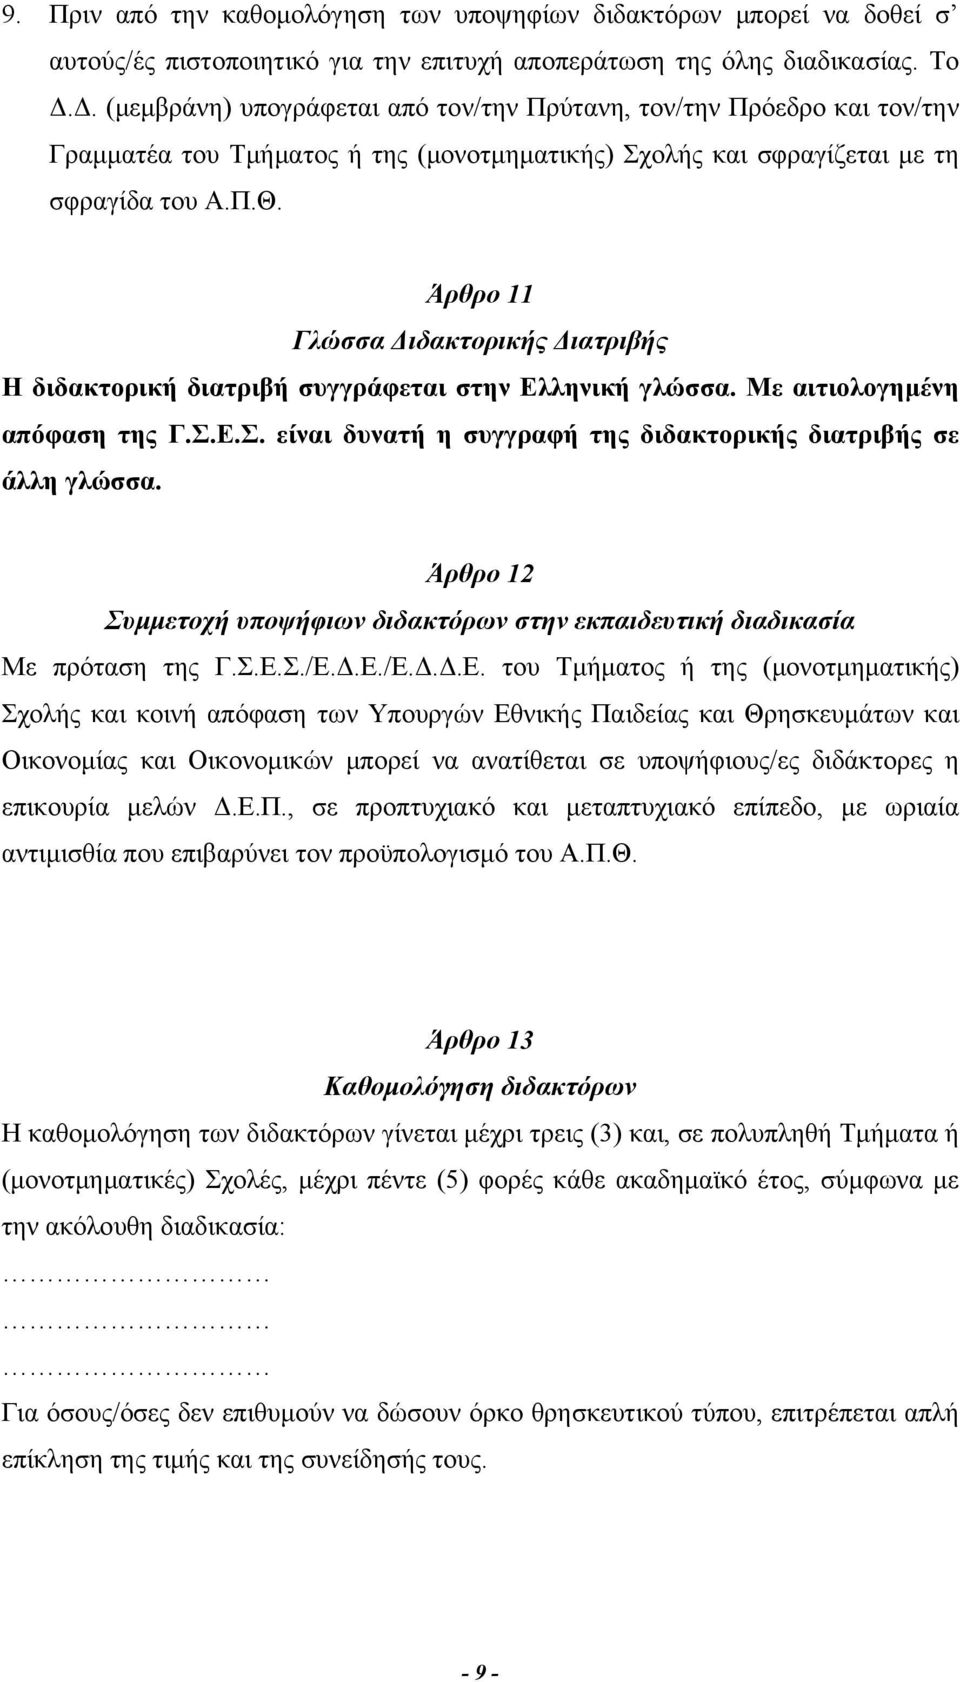 Άρθρο 11 Γλώσσα Διδακτορικής Διατριβής Η διδακτορική διατριβή συγγράφεται στην Ελληνική γλώσσα. Με αιτιολογημένη απόφαση της Γ.Σ.Ε.Σ. είναι δυνατή η συγγραφή της διδακτορικής διατριβής σε άλλη γλώσσα.